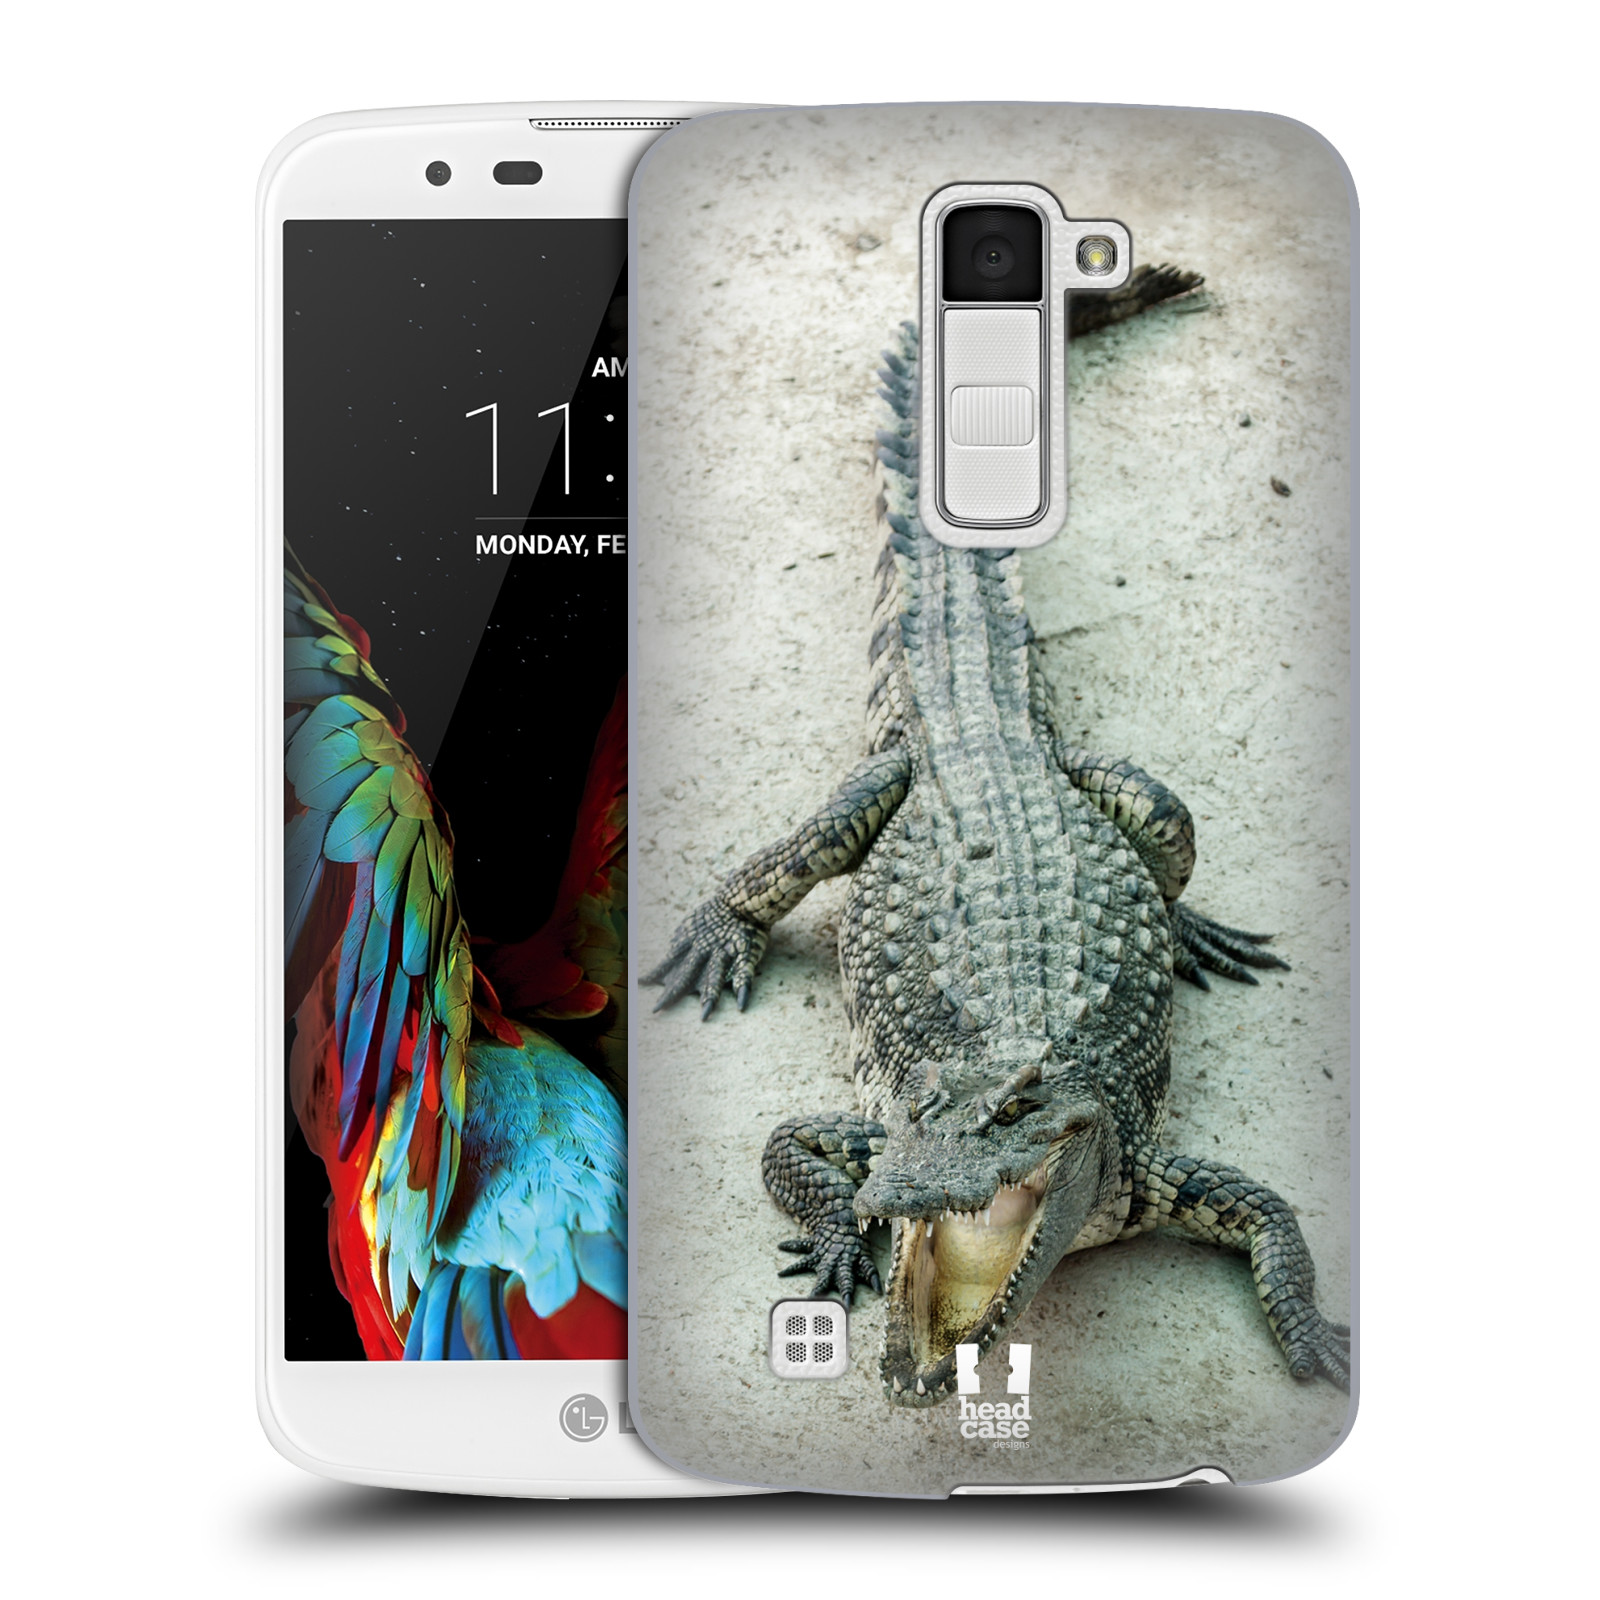 HEAD CASE plastový obal na mobil LG K10 vzor Divočina, Divoký život a zvířata foto KROKODÝL, KAJMAN